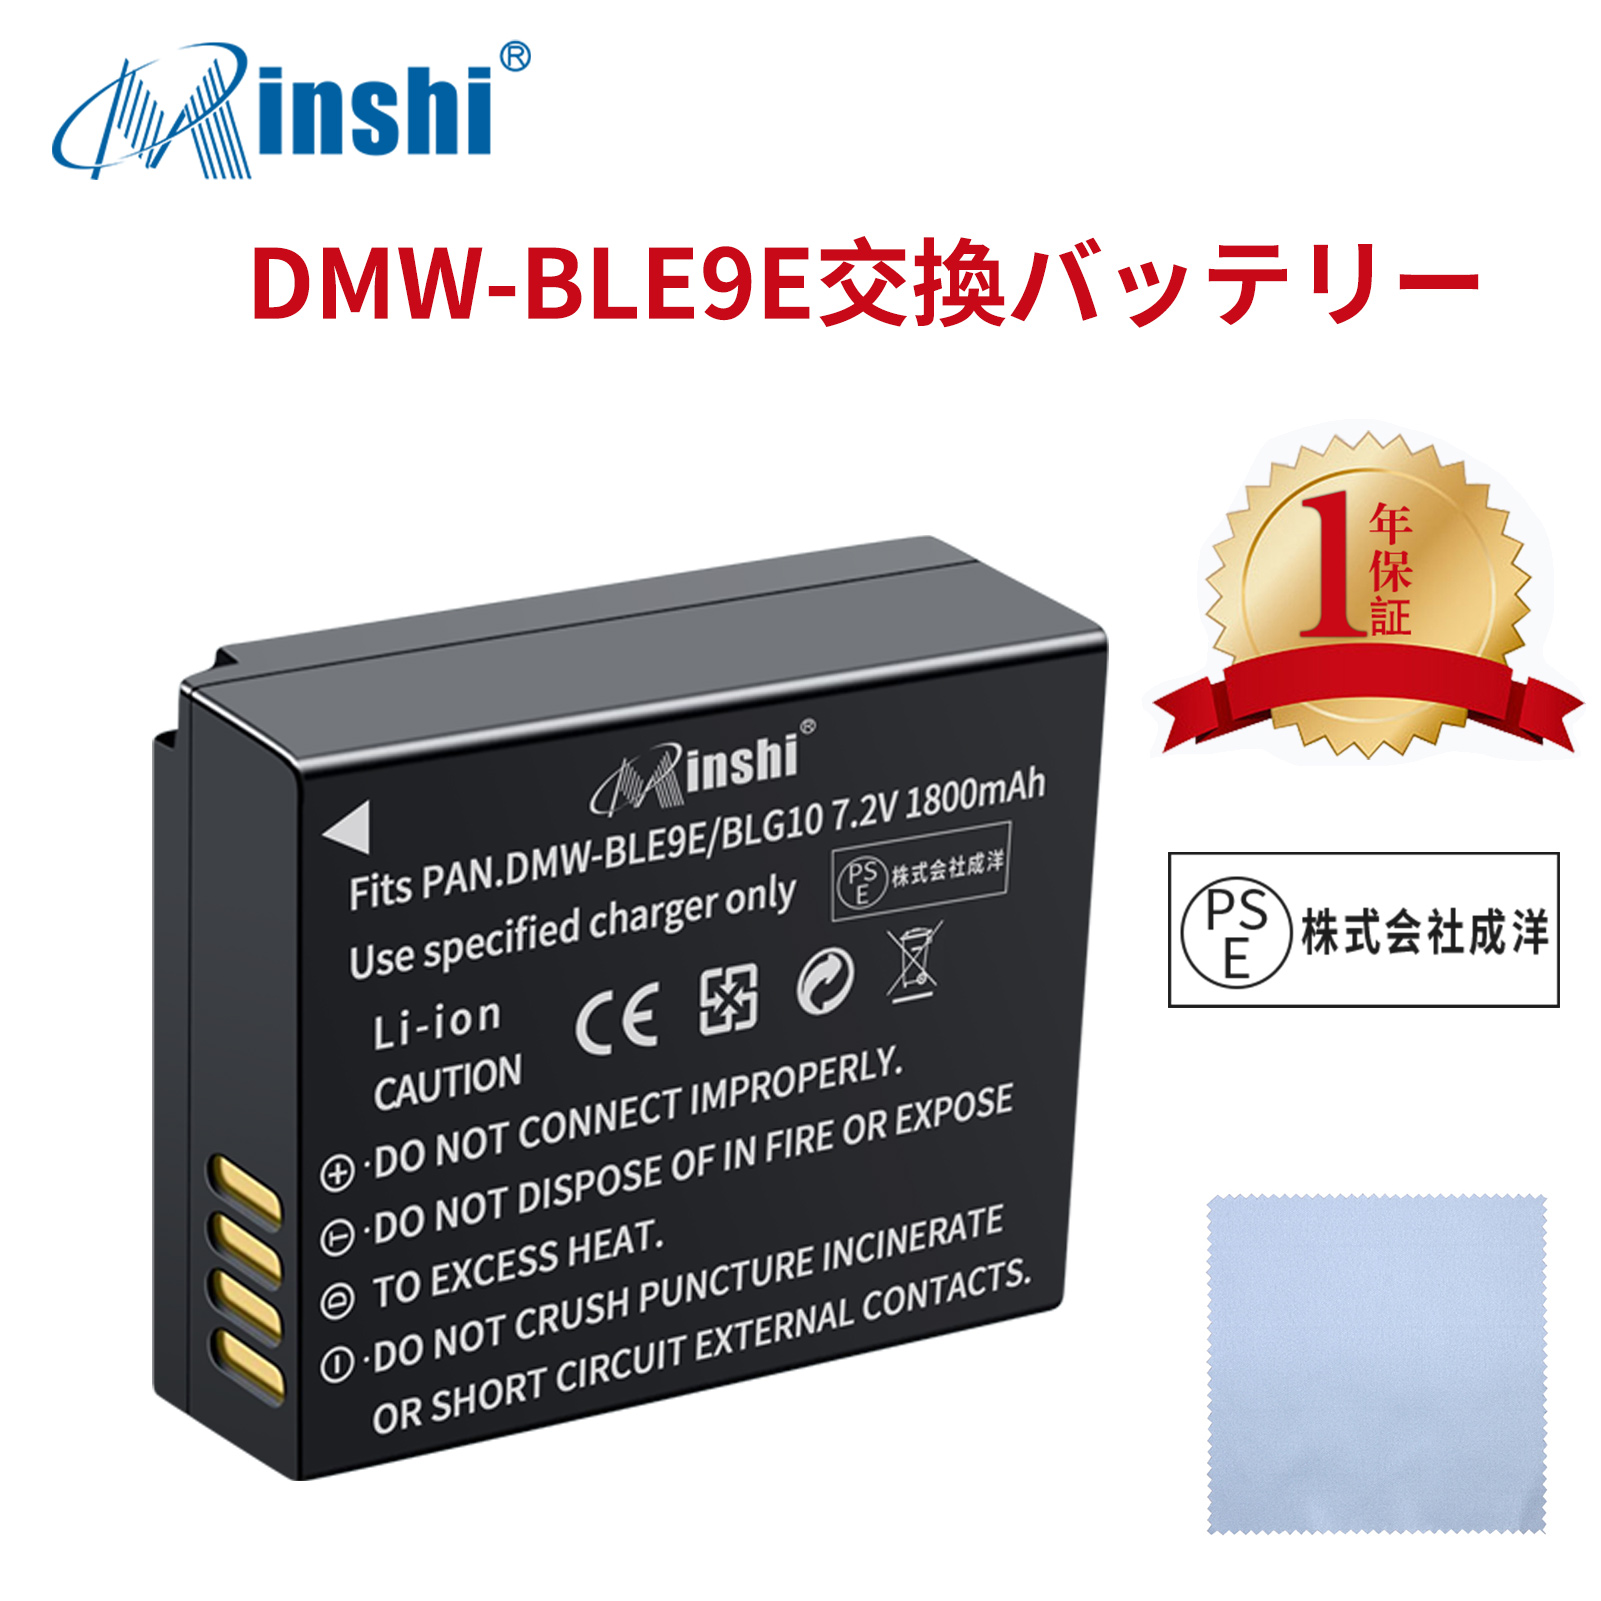 【清潔布ー付】minshi Panasonic DC-TZ90 DMC-GF3   【1800mAh 7.2V】PSE認定済 高品質 DMW-BLG10 交換用バッテリー